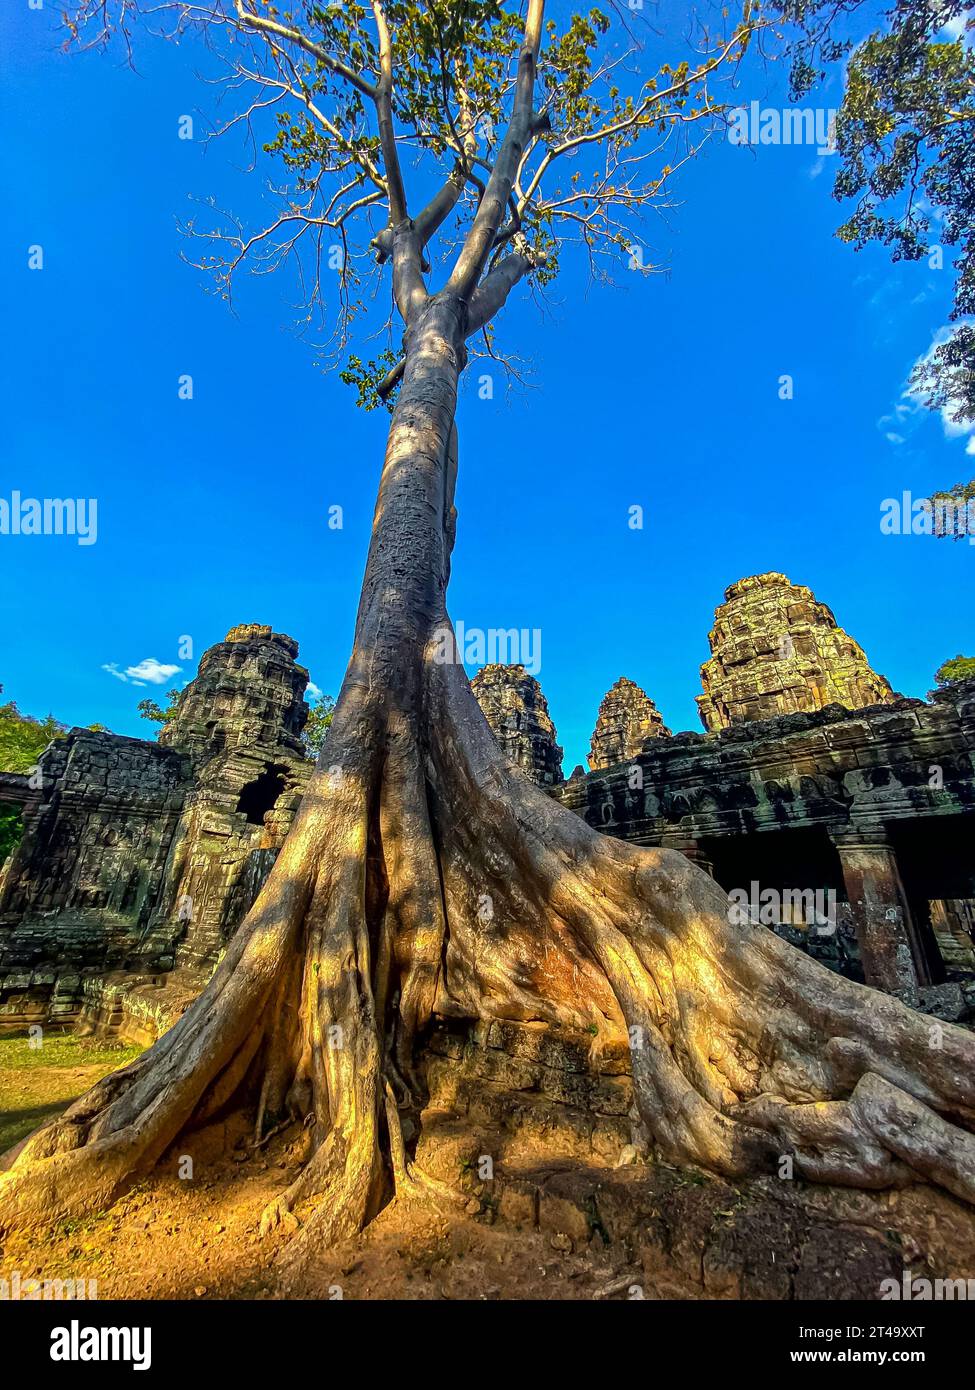 Ta Prohm, un temple mystérieux de la civilisation khmère, situé sur le territoire d'Angkor au Cambodge. Banque D'Images